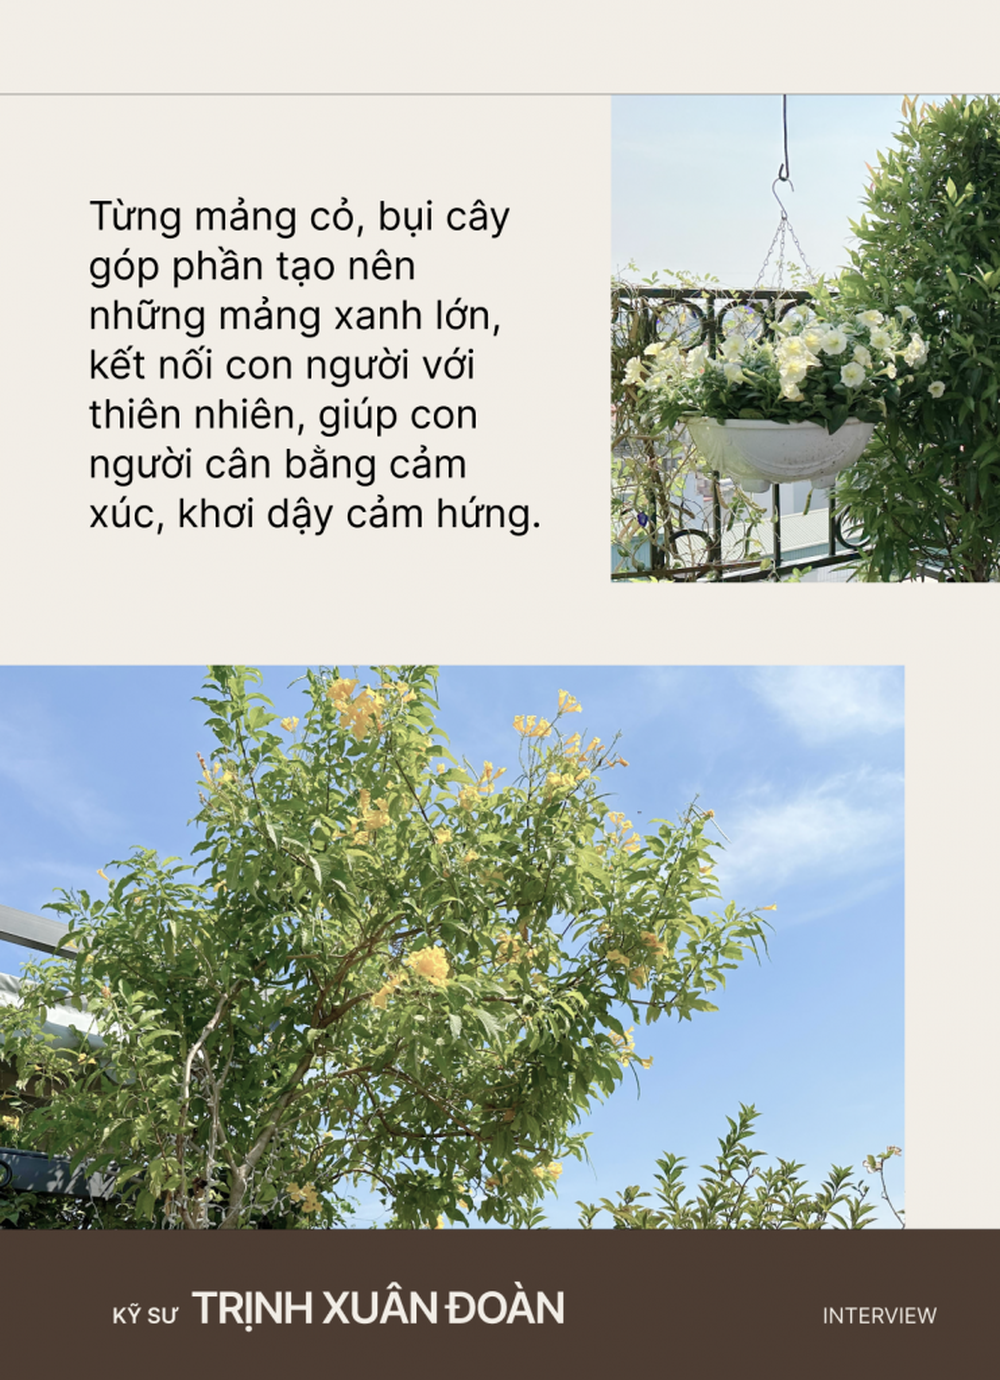 Kỹ sư thiết kế sân vườn Trịnh Xuân Đoàn: Từng mảng cỏ, bụi cây góp phần xanh hóa những tảng bê tông đô thị, giúp con người tìm về với thiên nhiên - Ảnh 8.